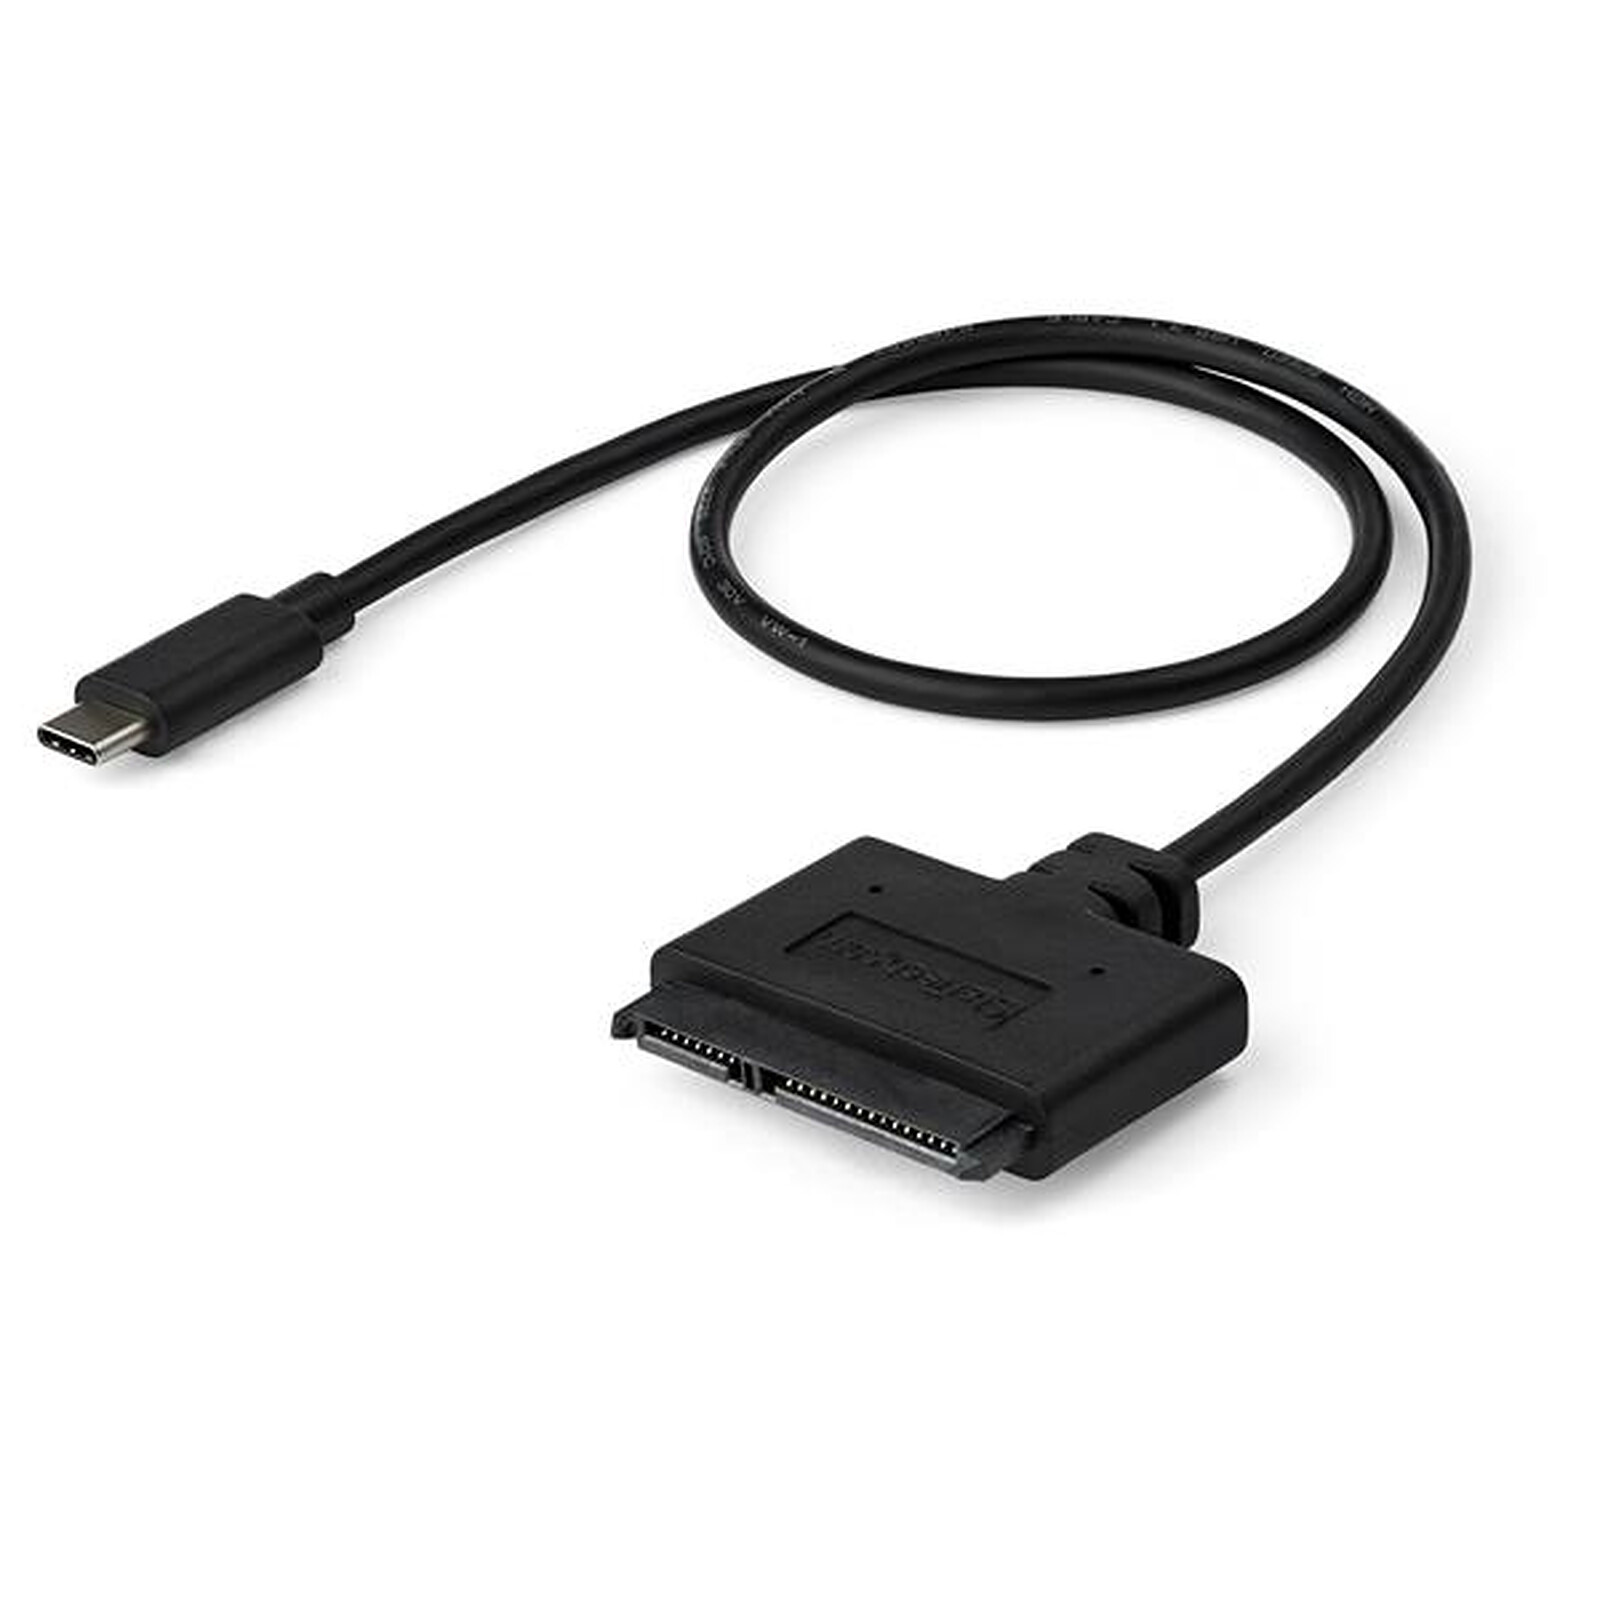 Adaptateur USB IDE ou SATA adaptateur secteur 12 V 2 A et câble USB 3.0 adaptateur de disque dur USB 3.0 universel pour disque dur SATA HDD/SSD et disque dur IDE 2,5/3,5 